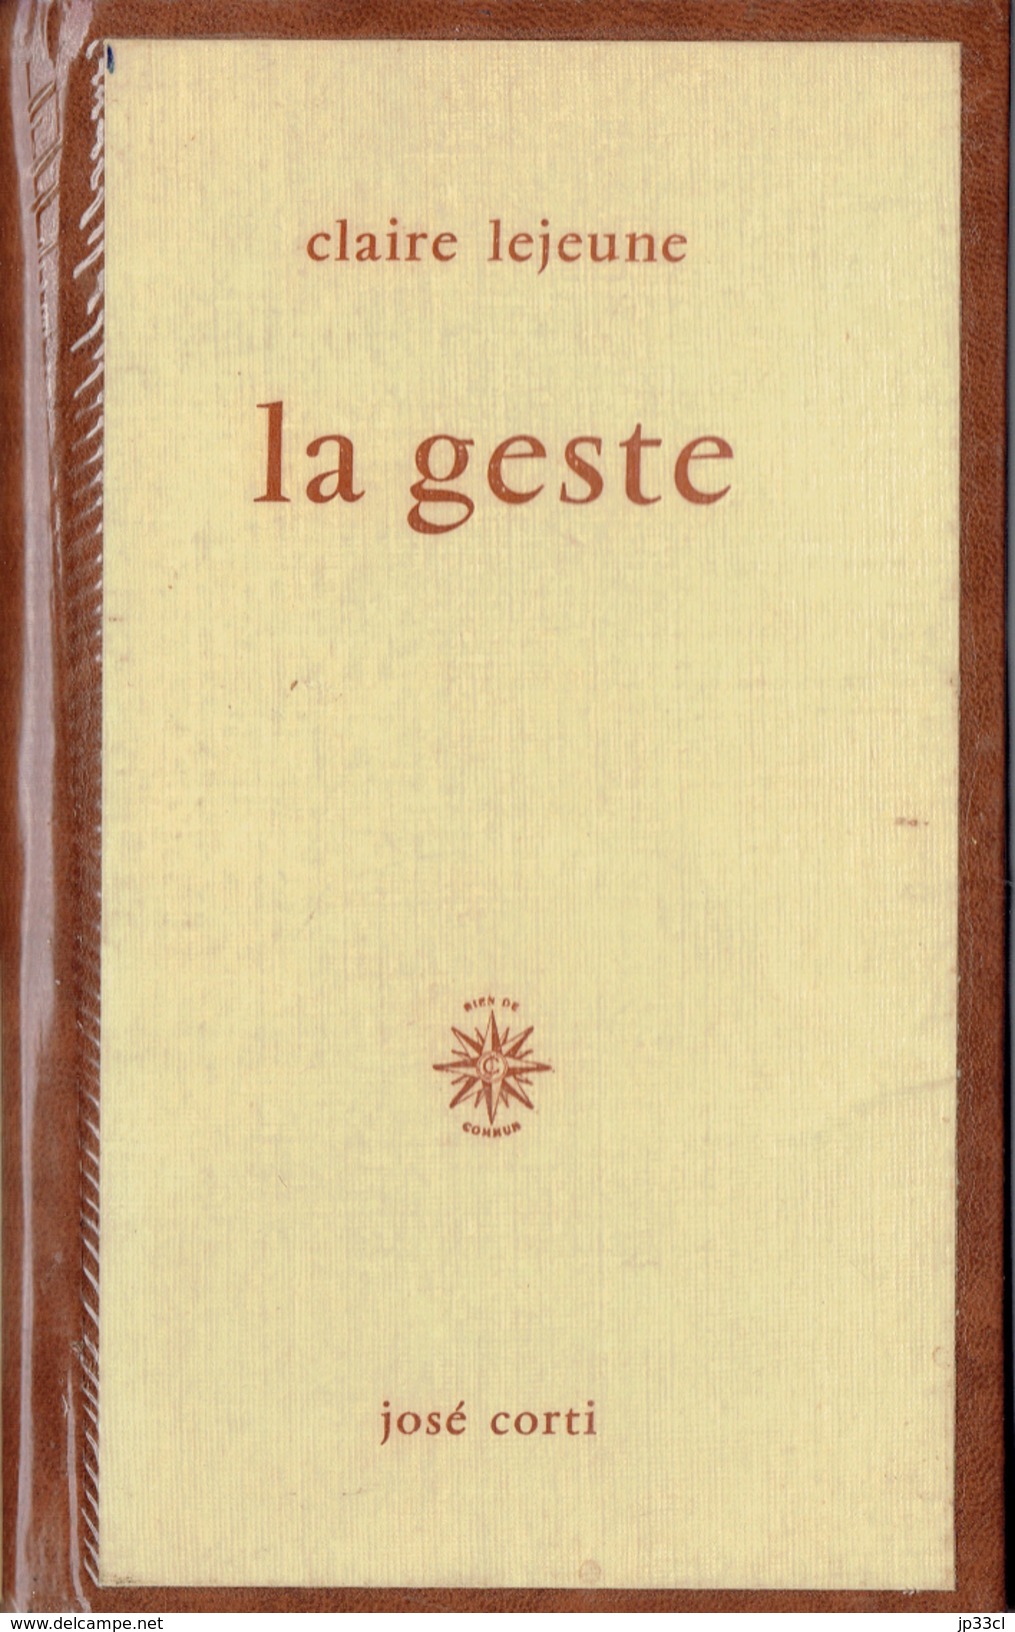 LA GESTE Par Claire Lejeune, José Corti, Paris, 1966, 88 Pages - Auteurs Français